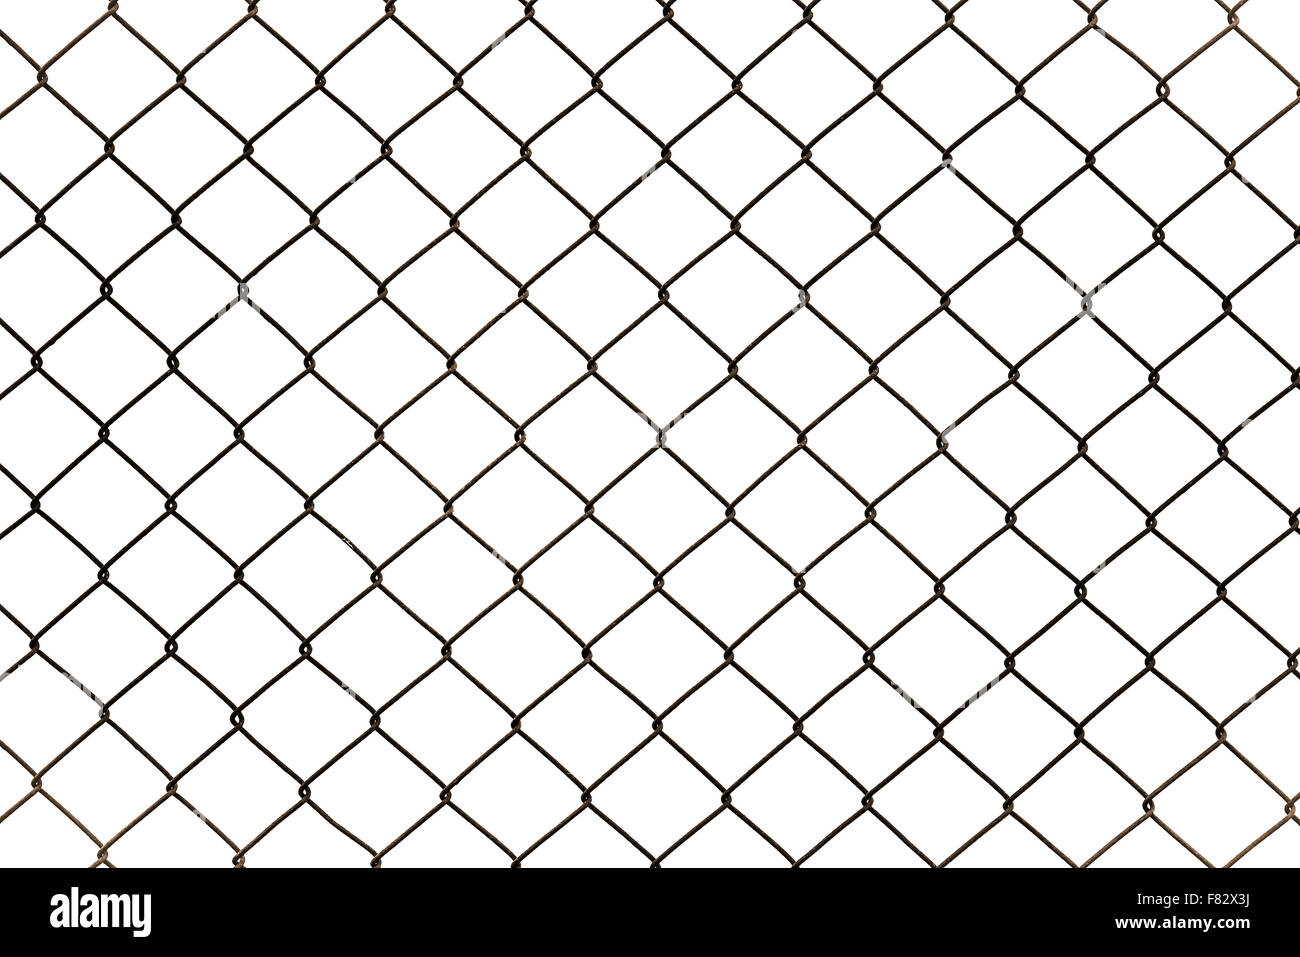 Rusty chain link fencing isolati su sfondo bianco, recinzione metallica a losanga Foto Stock